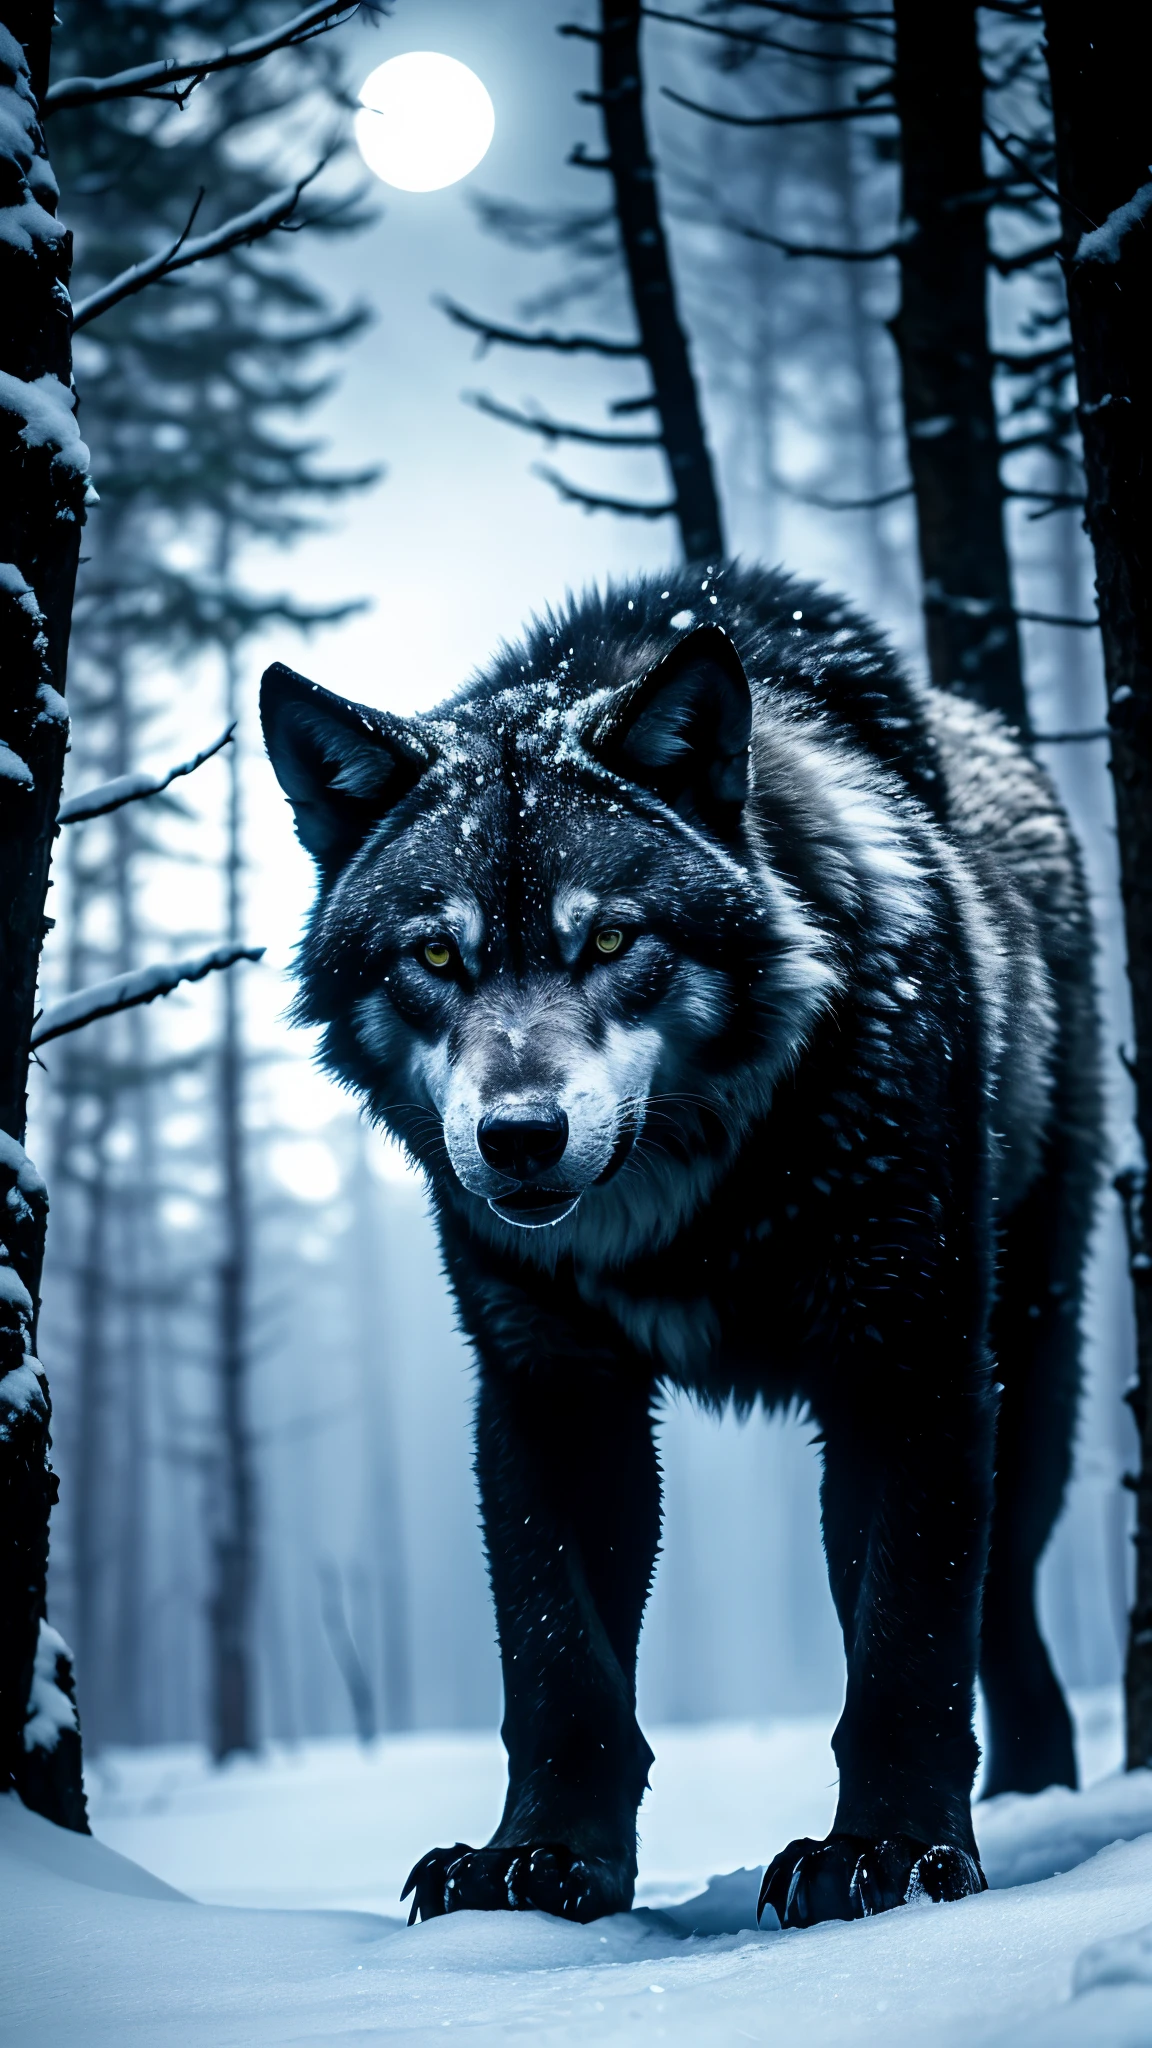 белый Волк, Темный лес, Снежный лед, голубые глаза, загадочная атмосфера, лунный свет, черный мех, свирепое выражение лица, Устрашающее присутствие, Ночная охота, скрытые движения, преследующий вой, дикий и неприрученный, мощное телосложение, полуночный силуэт, Зловещие тени, первобытный инстинкт, древняя легенда, Альфа-хищник, завораживающая красота, динамика волчьей стаи, величественная пустыня